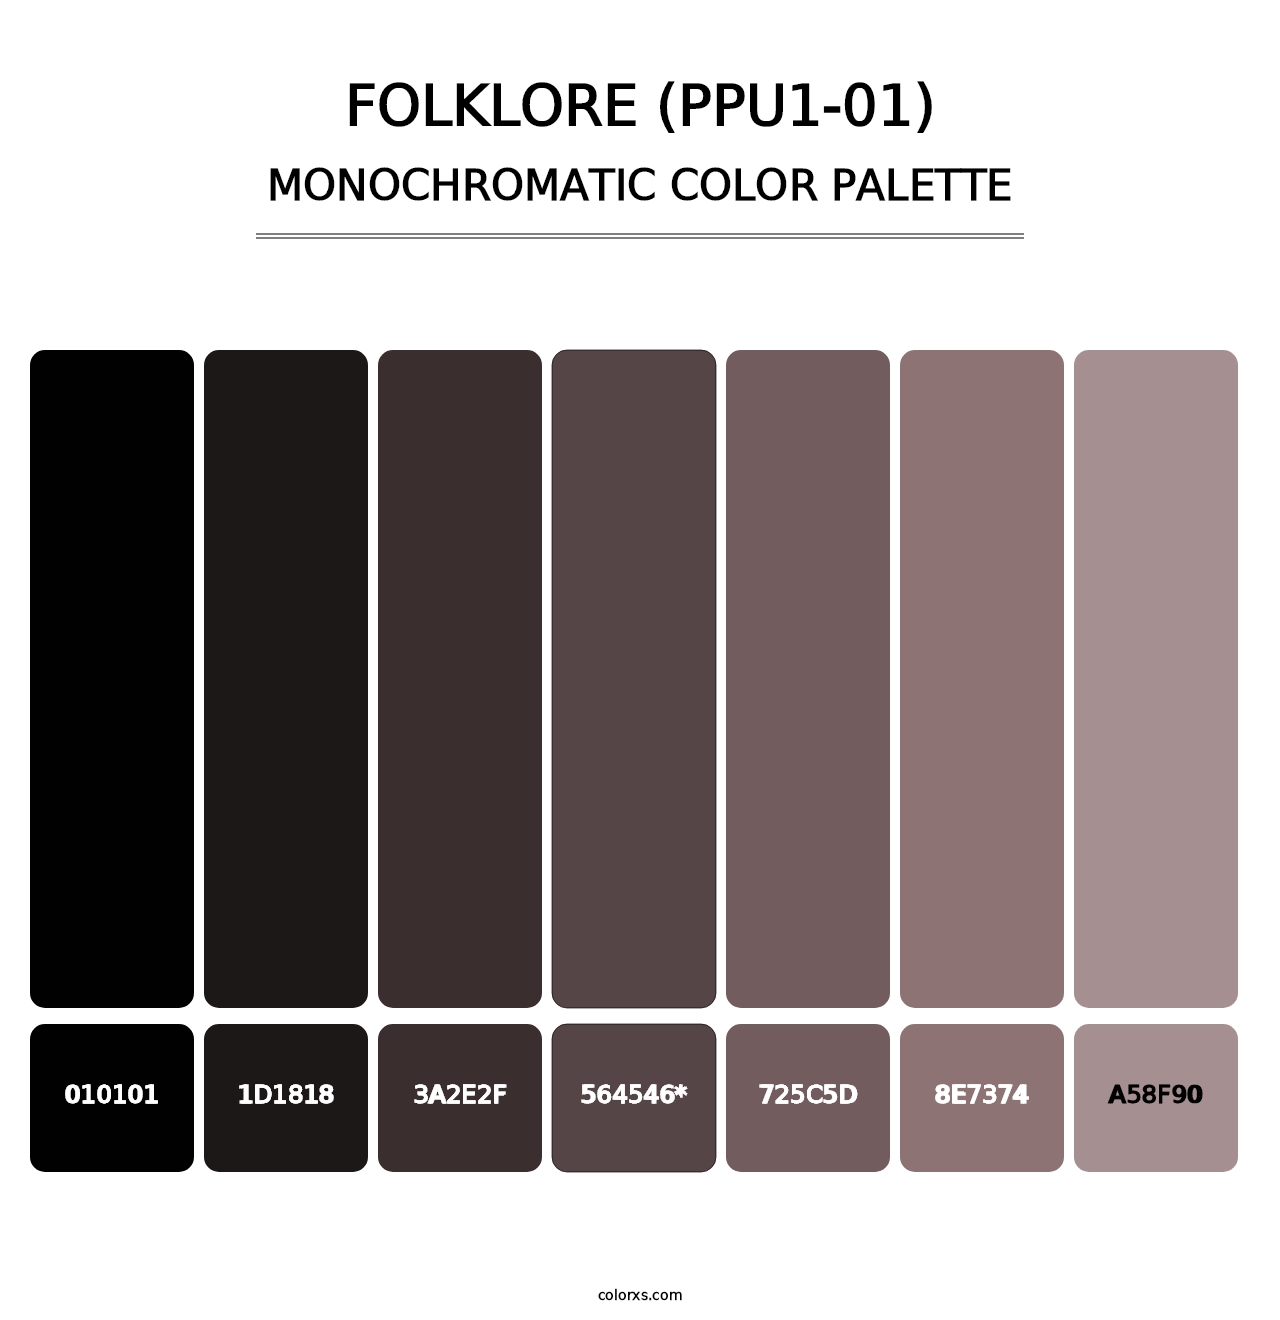 Folklore (PPU1-01) - Monochromatic Color Palette